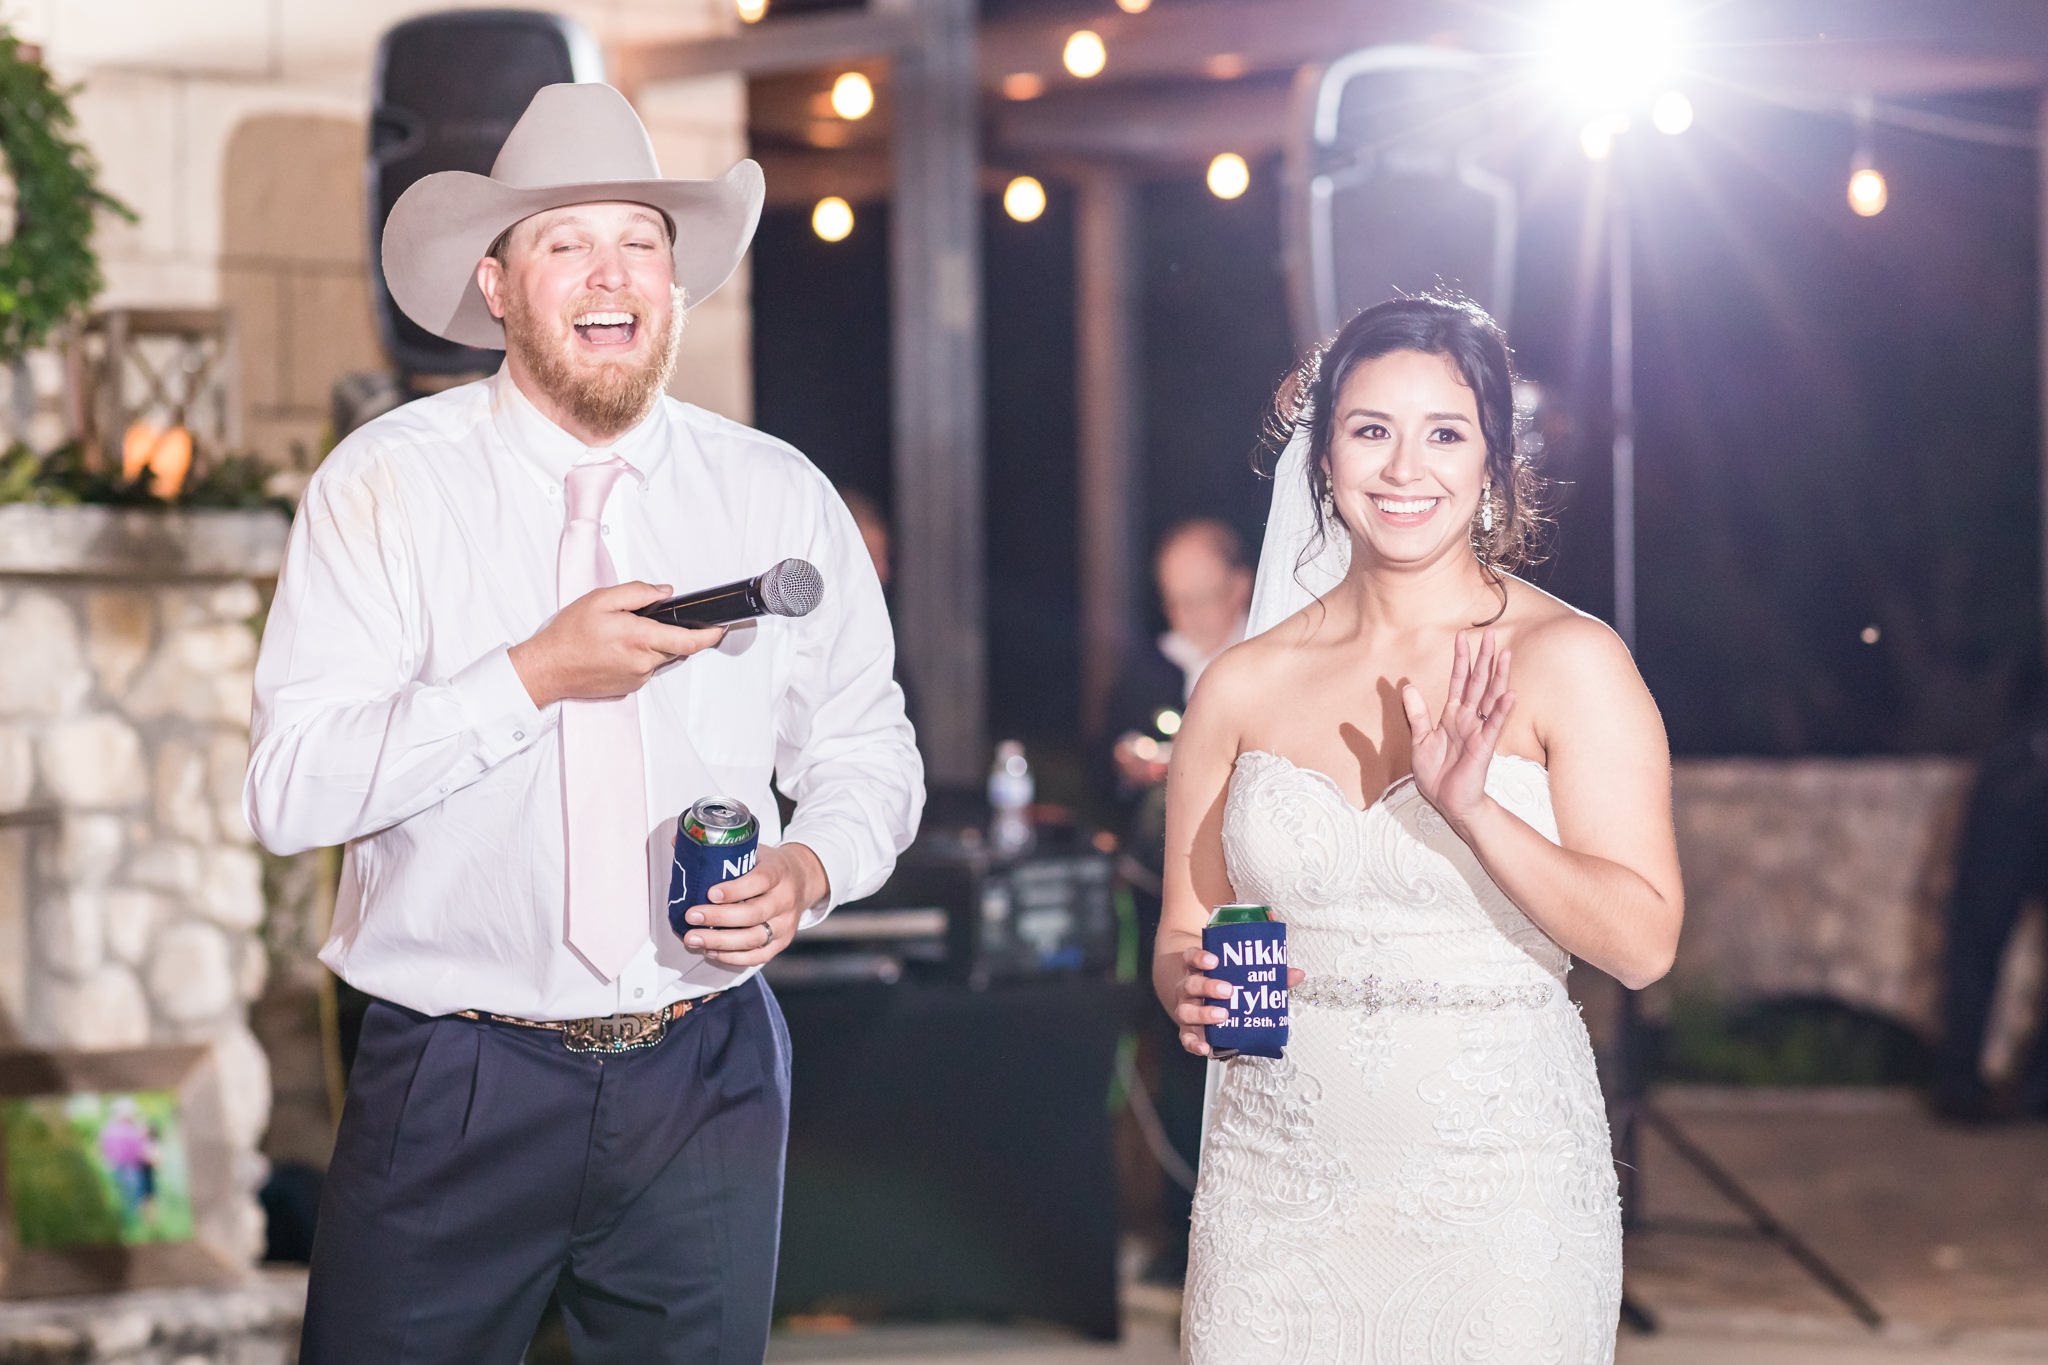 A Rustic & Blush Wedding at River Rock Event Center in Boerne, TX by Dawn Elizabeth Studios, San Antonio Wedding Photographer, Boerne Wedding Photographer